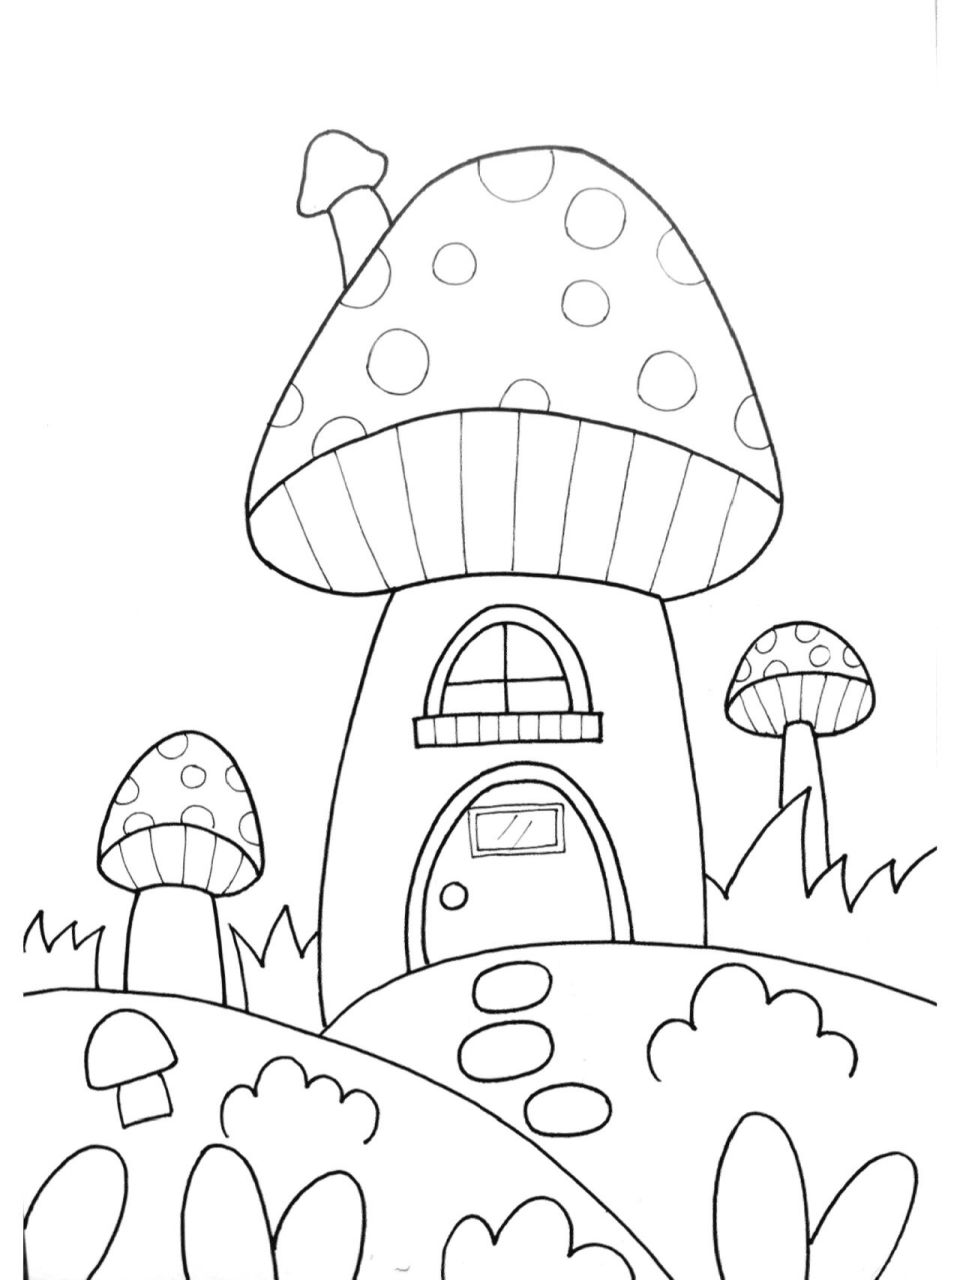 怎样画蘑菇房子图片